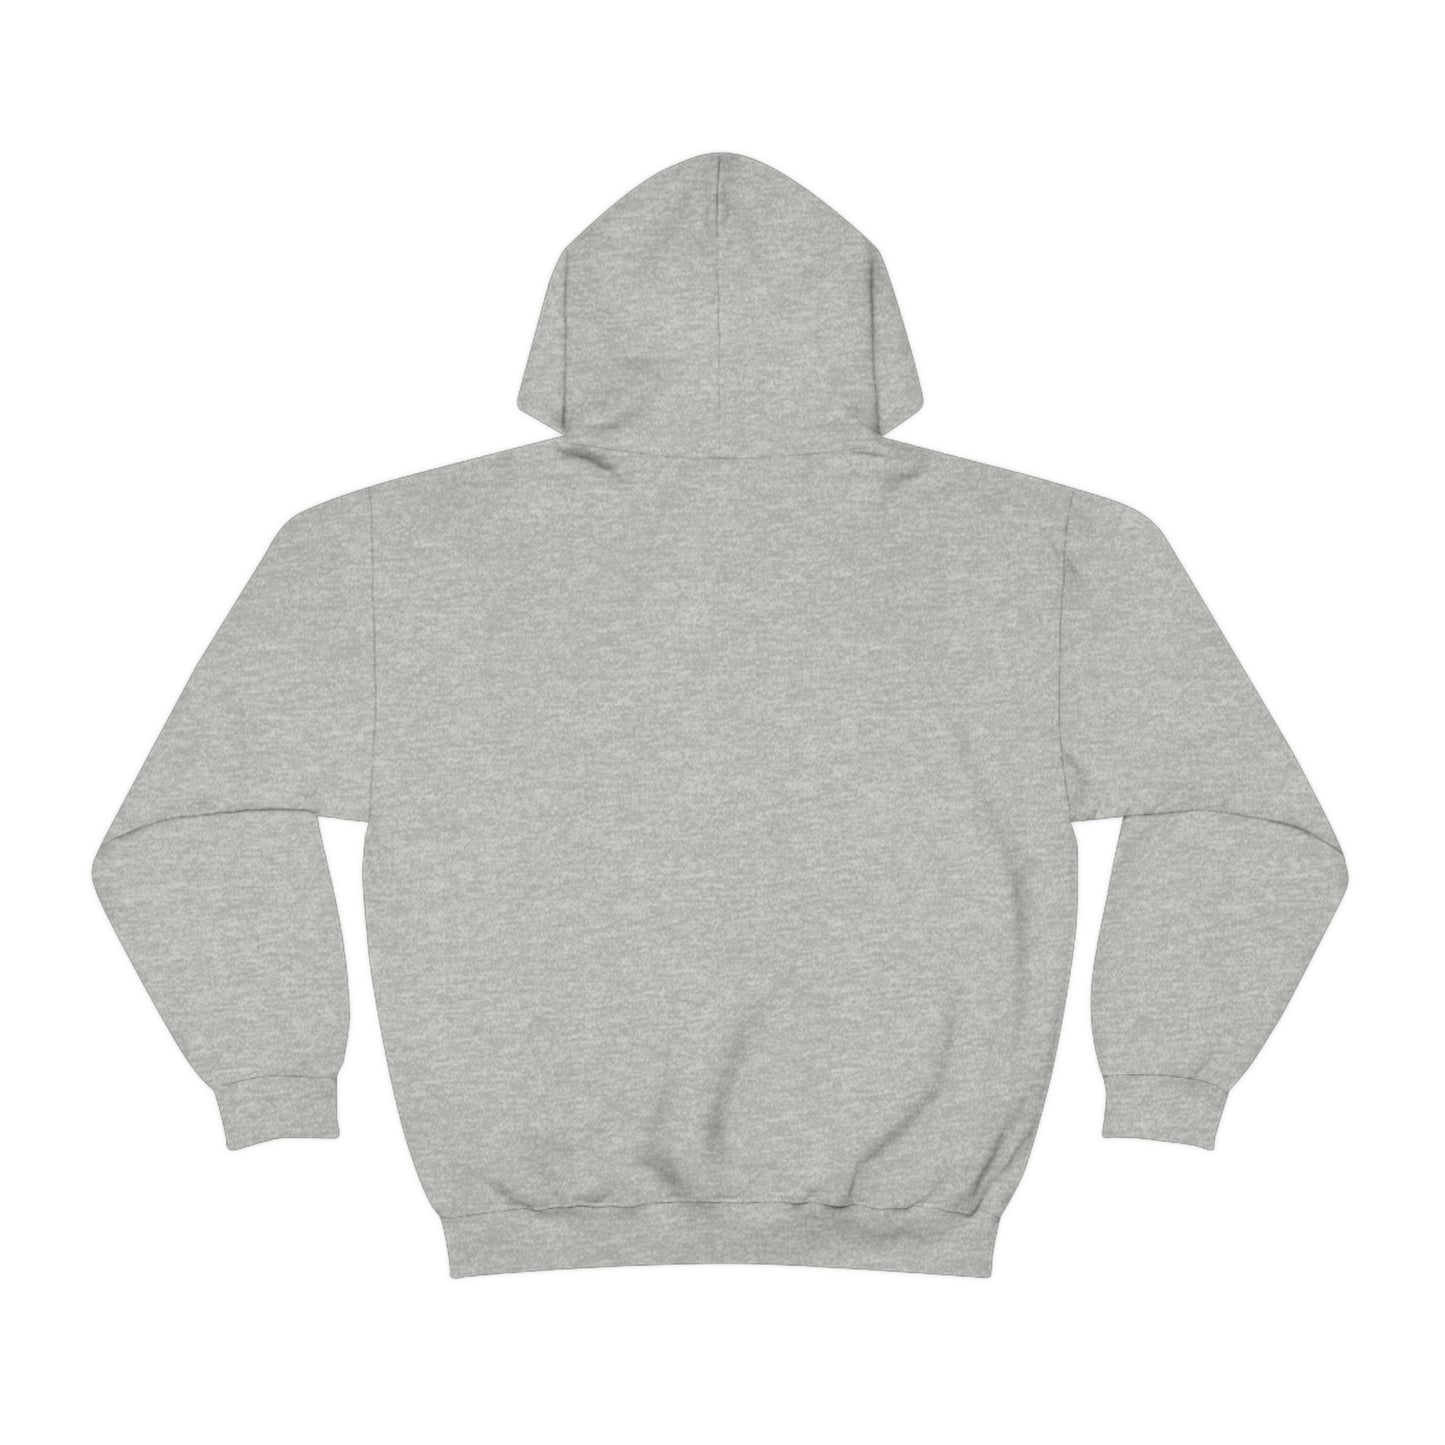 Yonder - Unisex Heavy Blend™ Hooded Sweatshirt